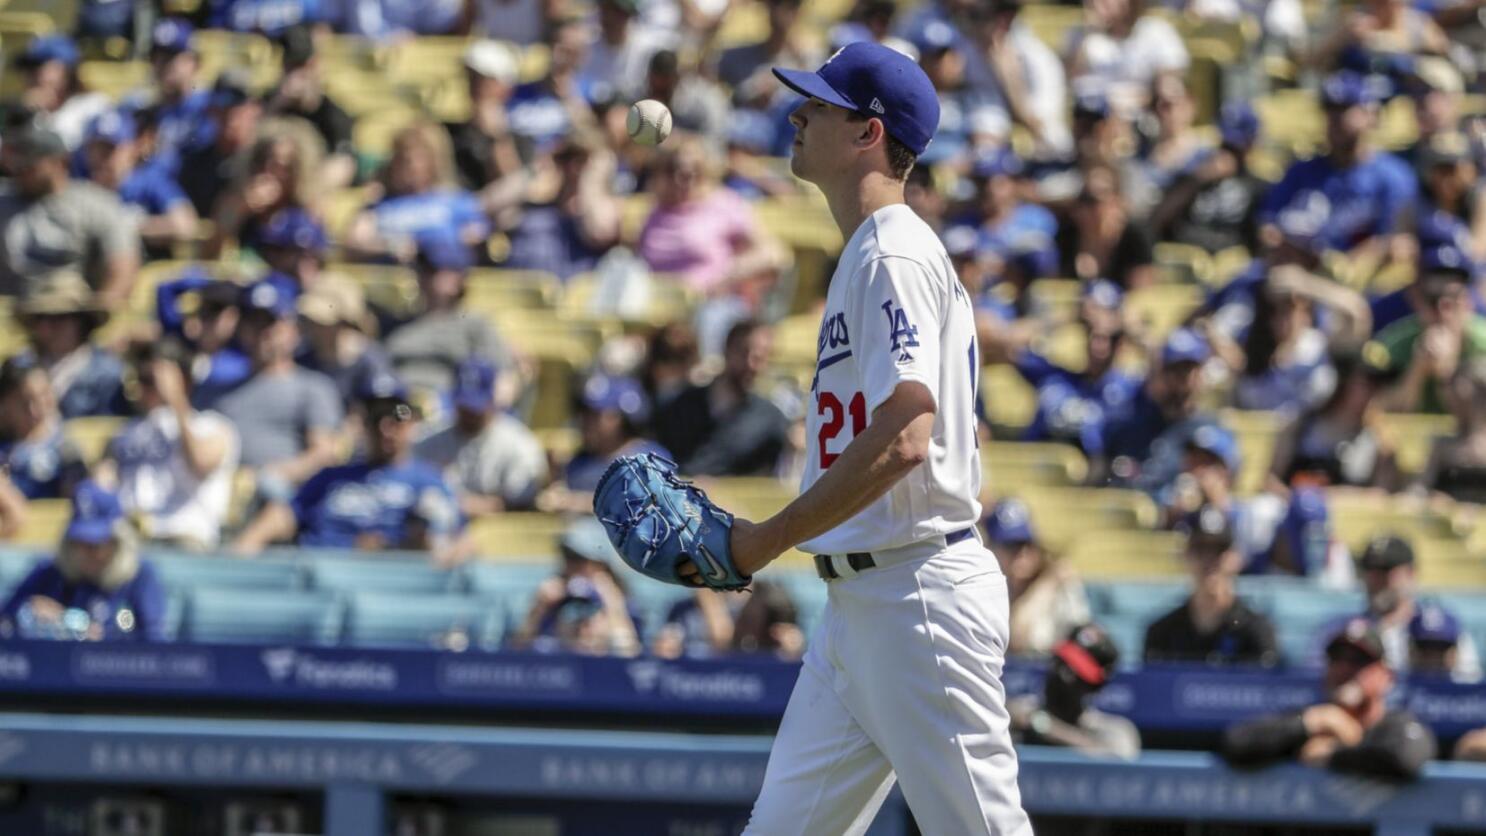 Dodgers pitcher Walker Buehler struggles in 2019 debut - Los Angeles Times